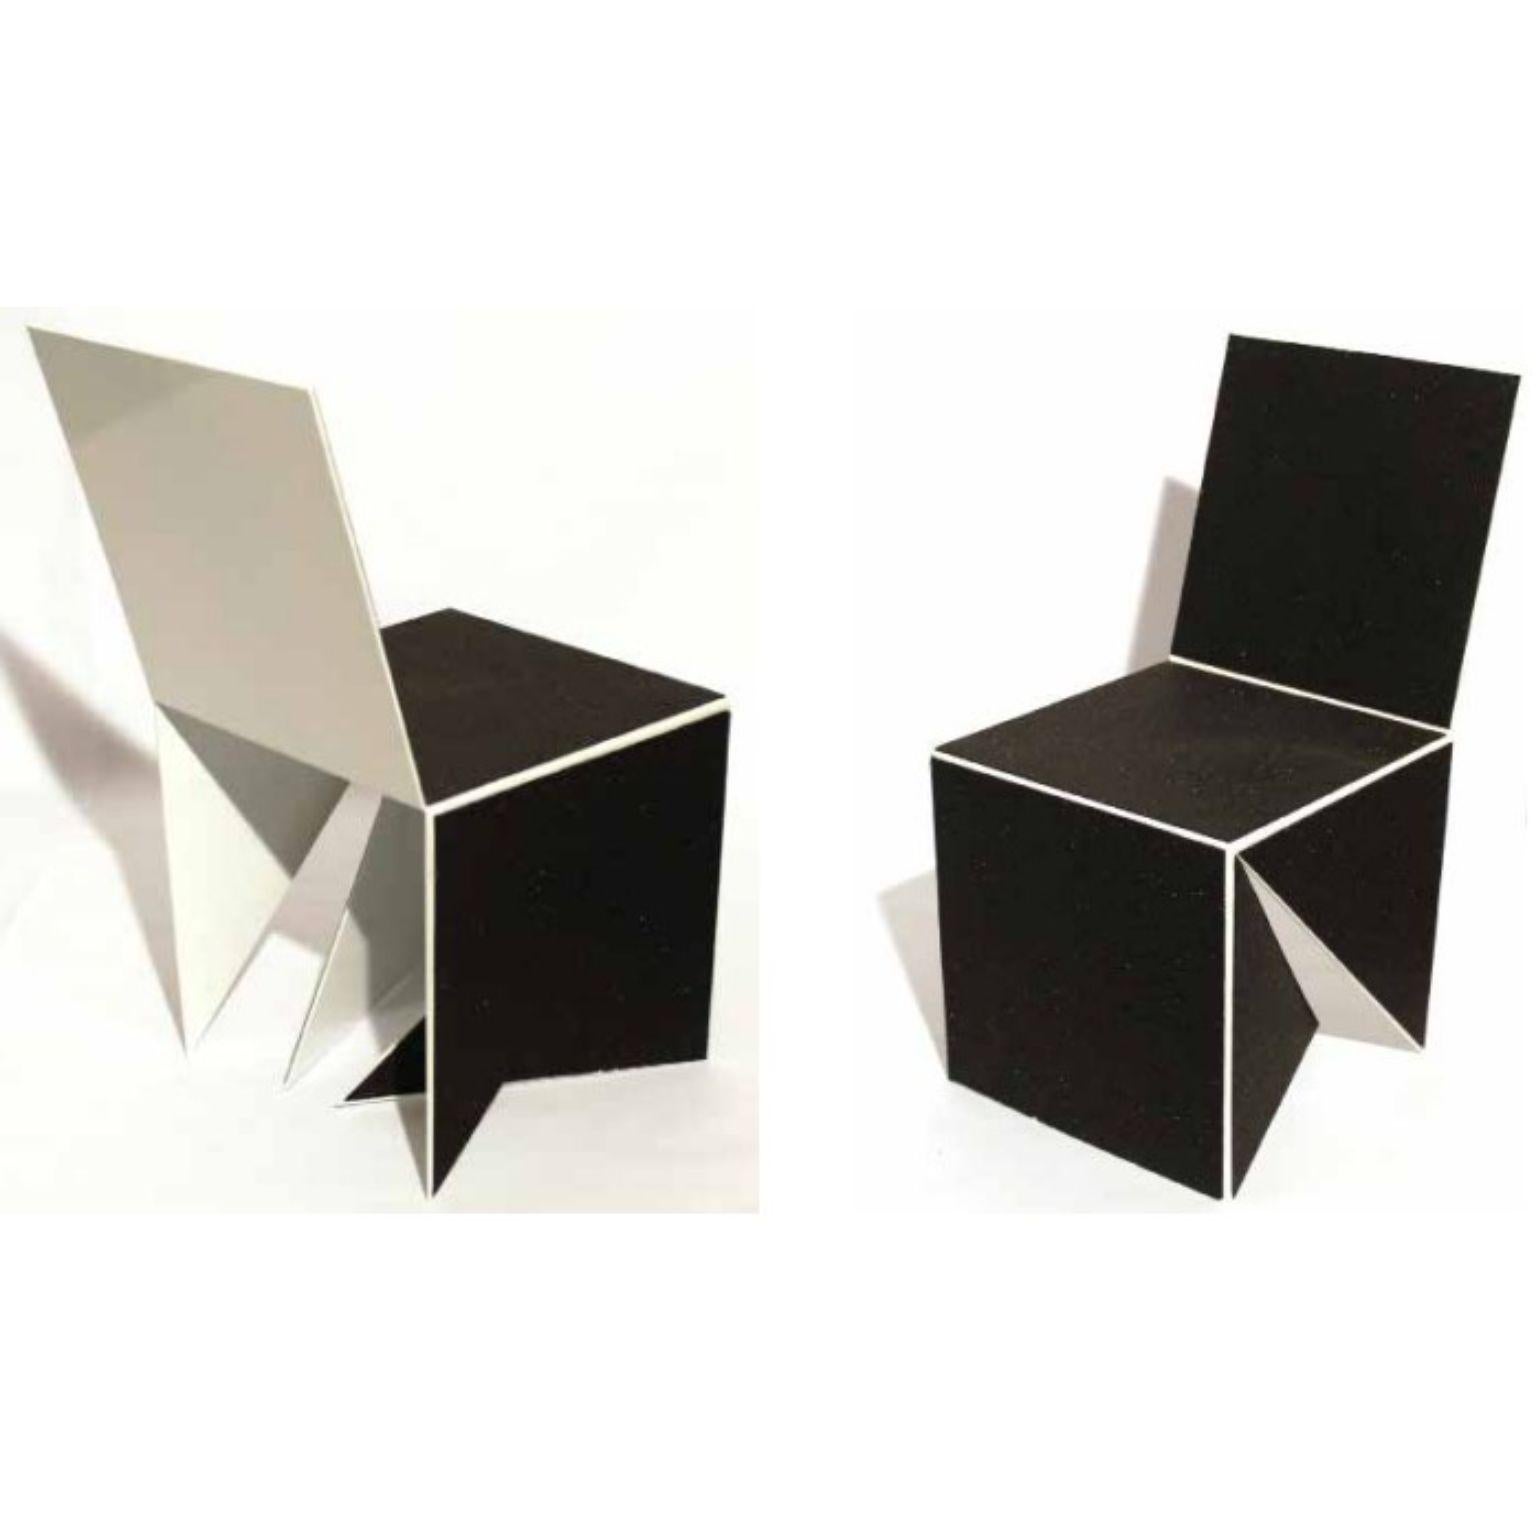 Set de 2 cubes Casulo #2 par Mameluca
Matériau : peinture électrostatique en aluminium, couverture en caoutchouc recyclé.
Dimensions : D 45 x L 45 x H 90 cm

Ouvrir un cube et le transformer en plan a été le point de départ de la création de ce